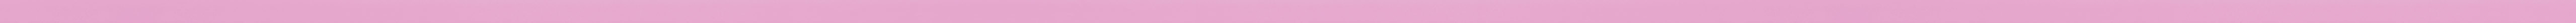 Squared pink frame frame